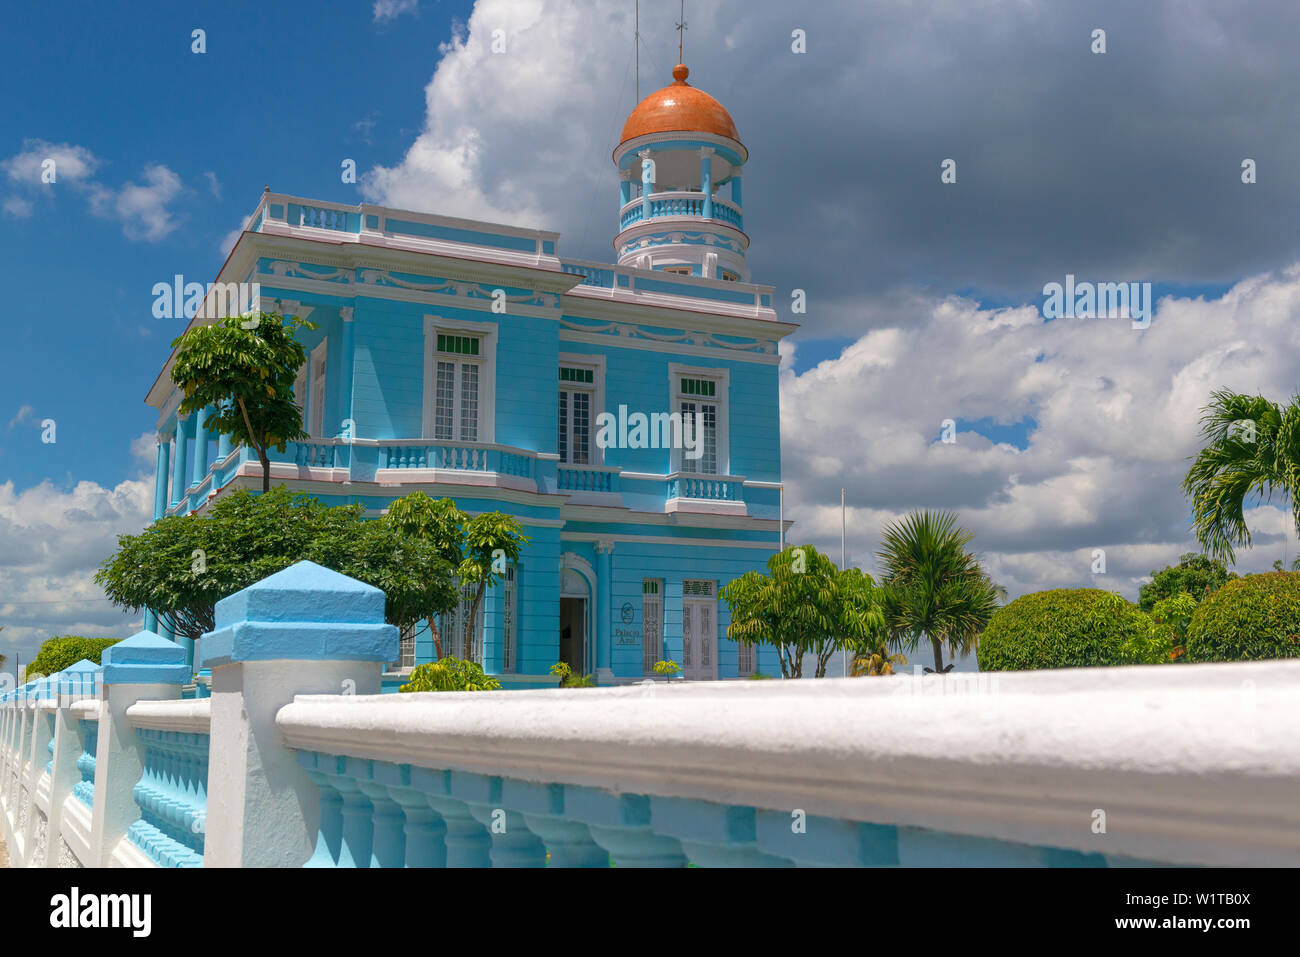 Palacio Azul ( maintenant un hôtel) construit en 1921 et un ancien dans le vieux quartier de classe supérieure sur Punta Gorda, Cienfuegos, Cuba Banque D'Images